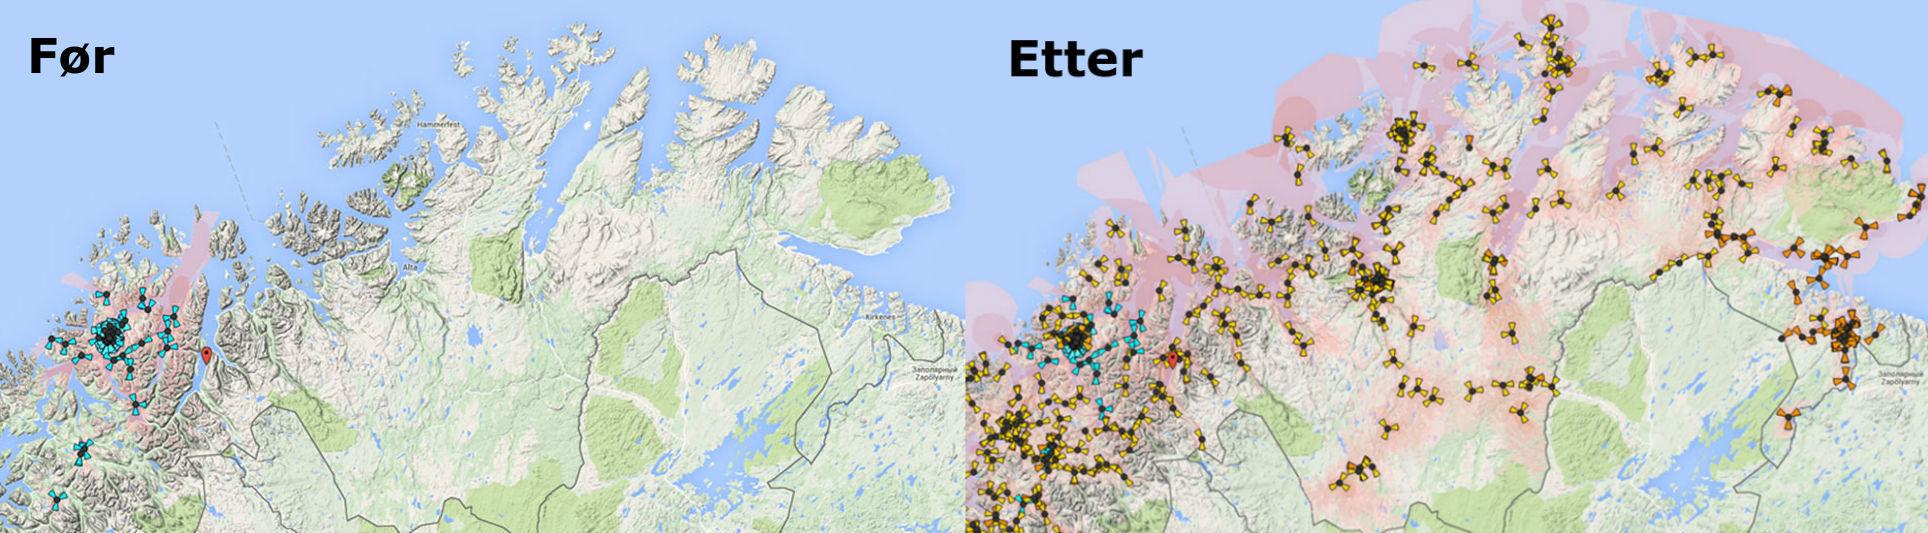 NetComs 4G-dekning i Finnmark før og etter utbyggingen som skal være ferdig i løpet av 2015. Foto: NetCom